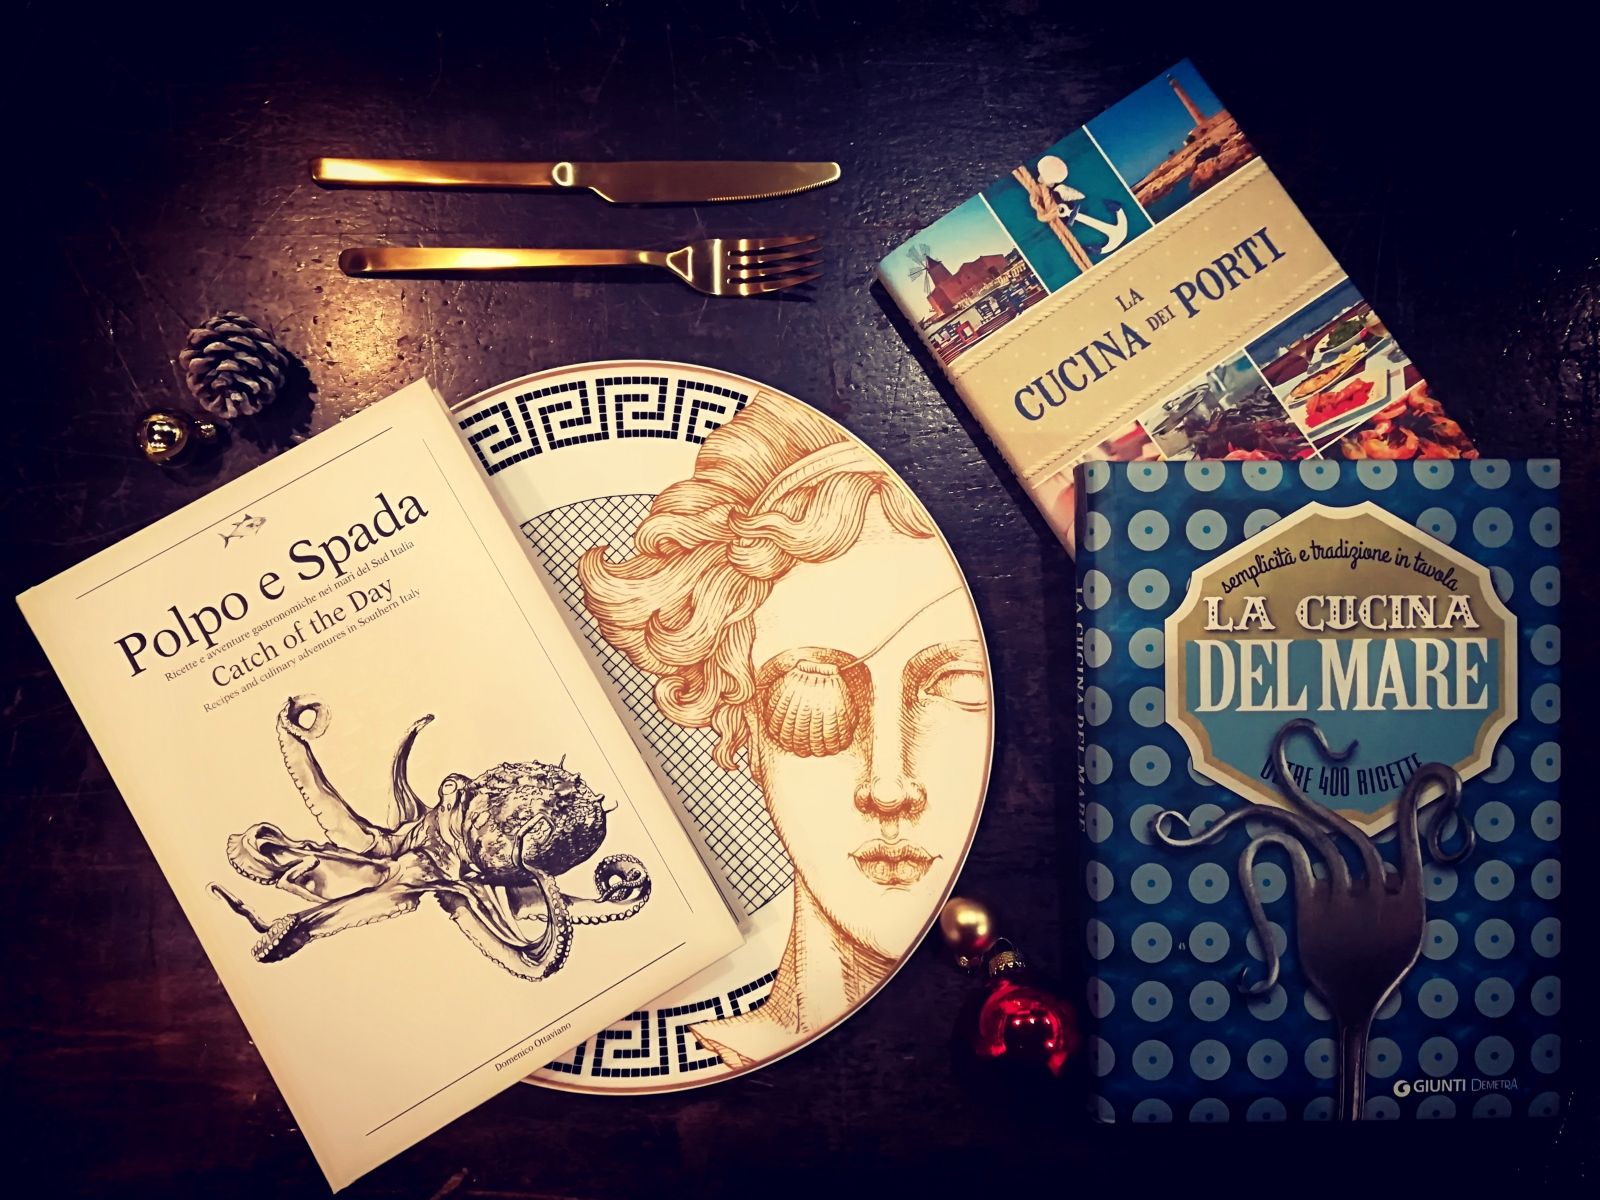 La tavola di Capodanno - Libri dal Blog del Mare